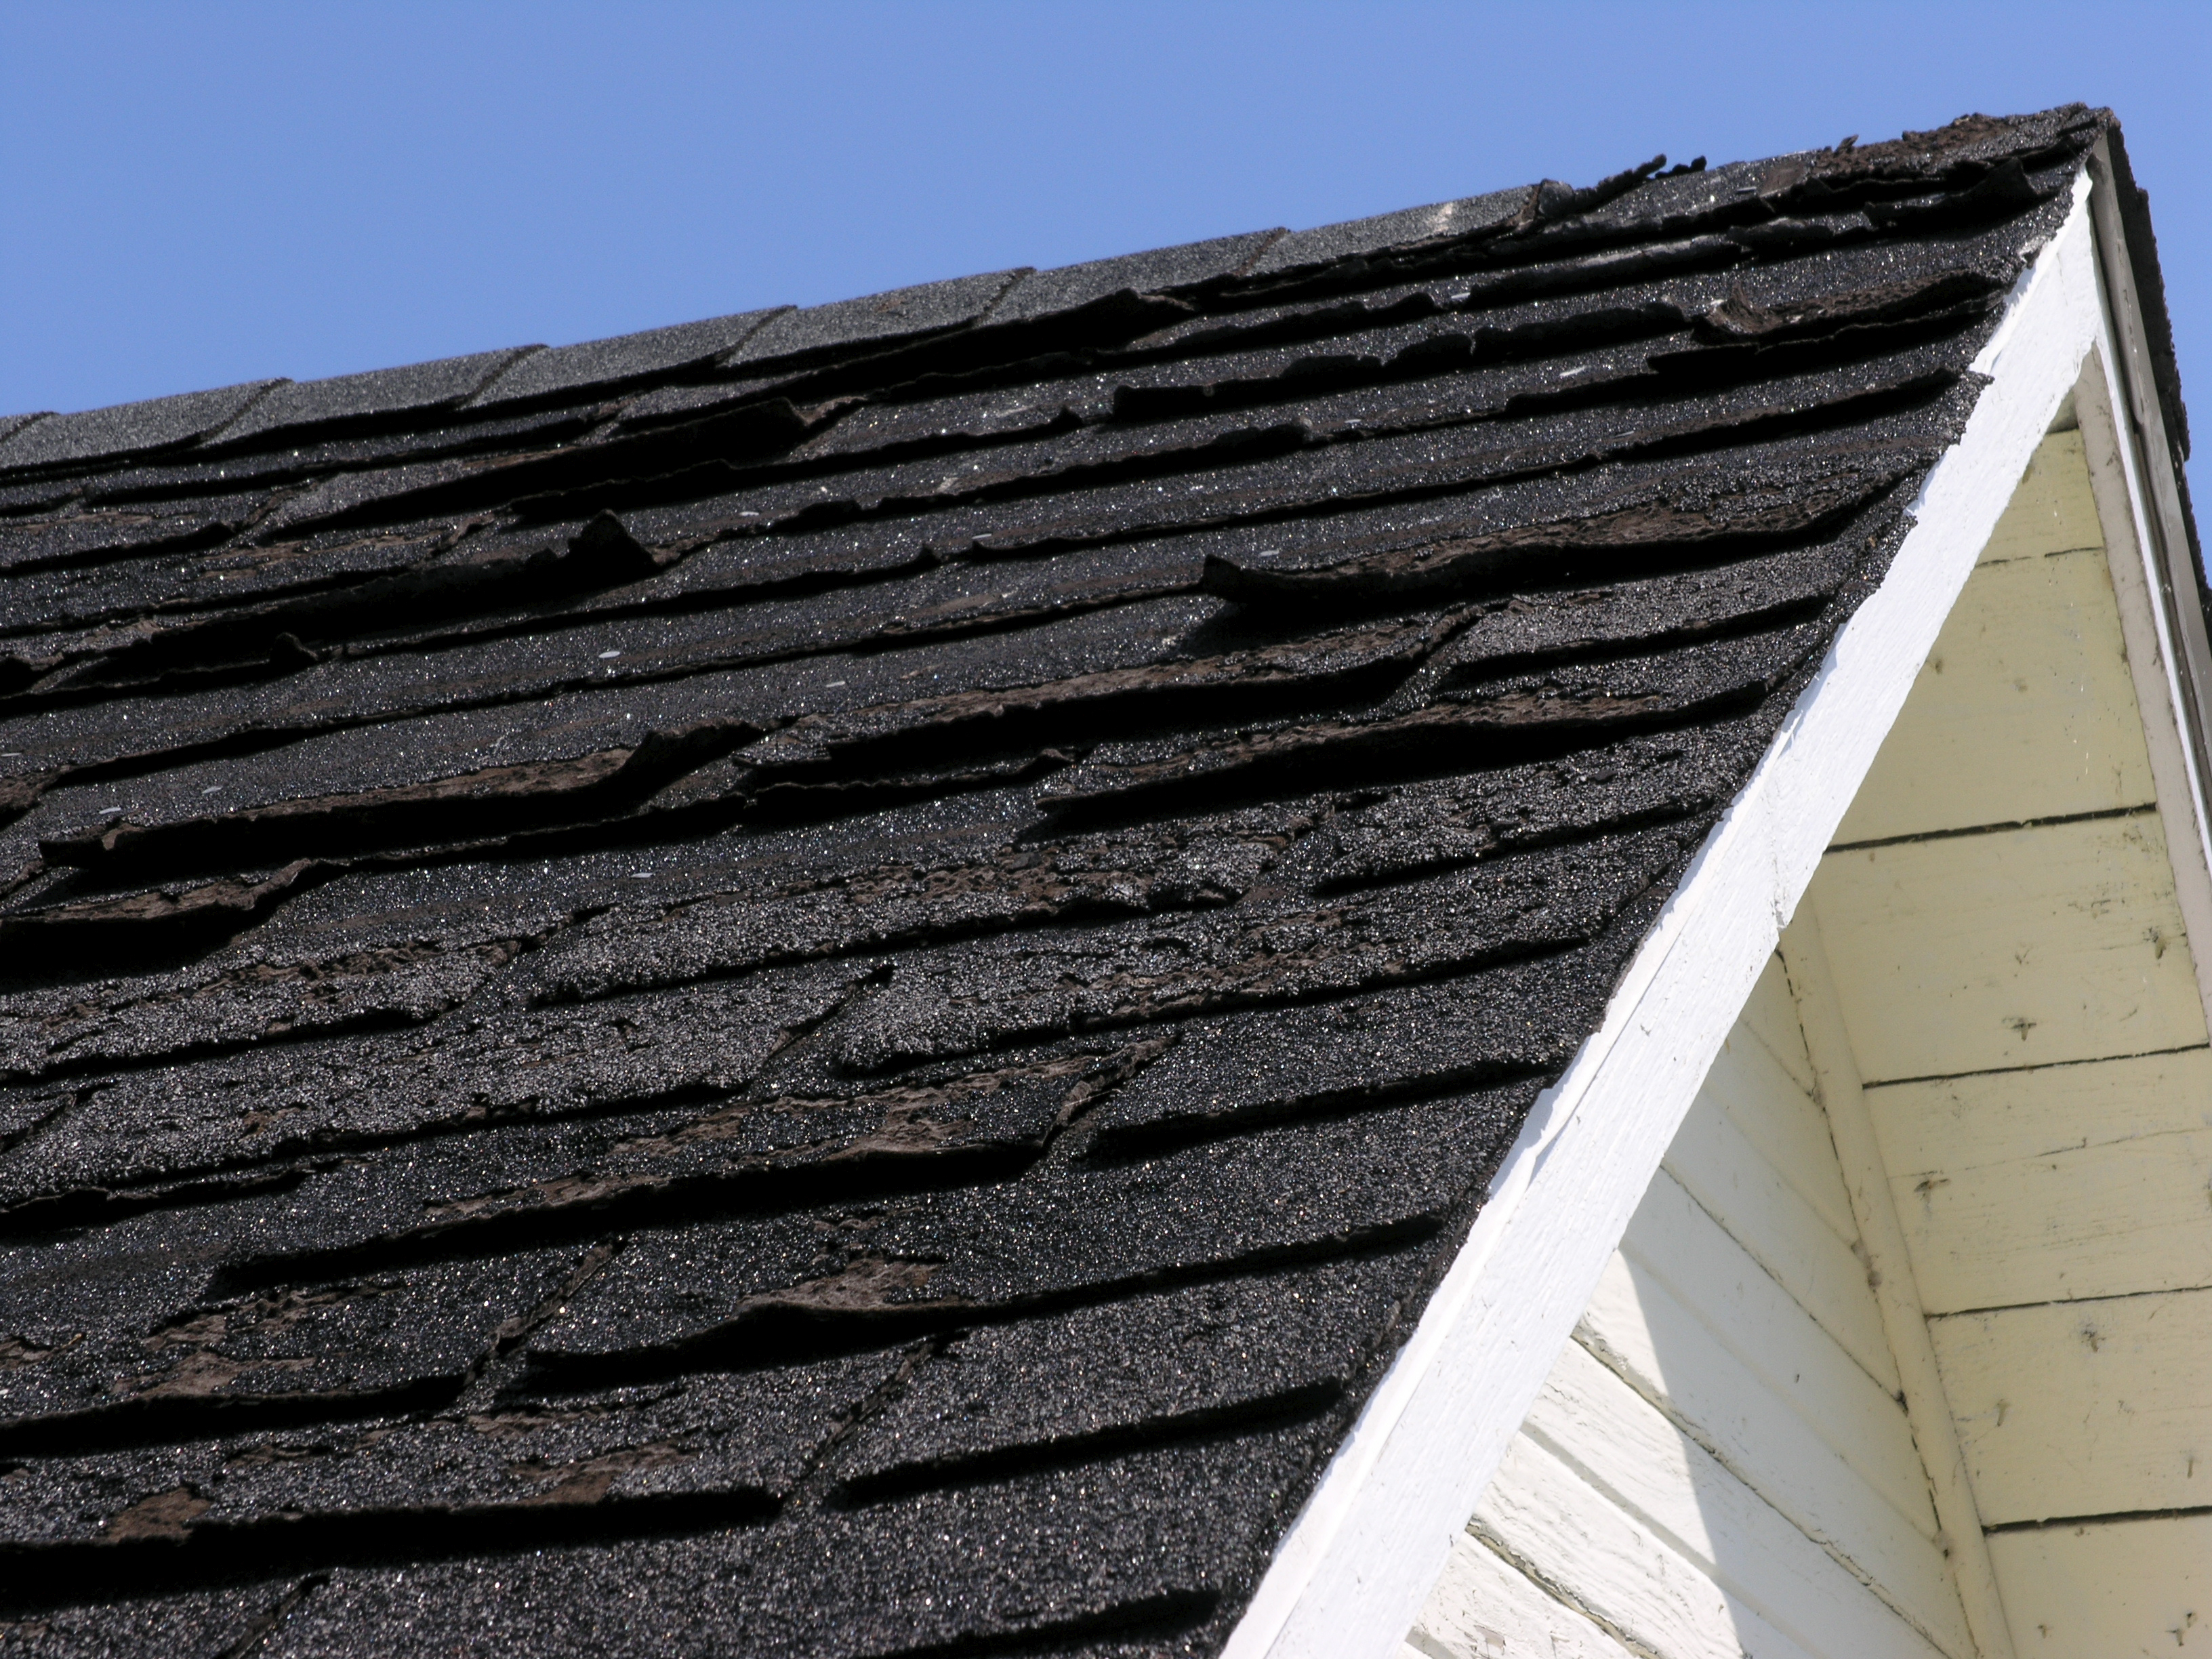 Damaged, old asphalt roof shingles in Hanover, PA